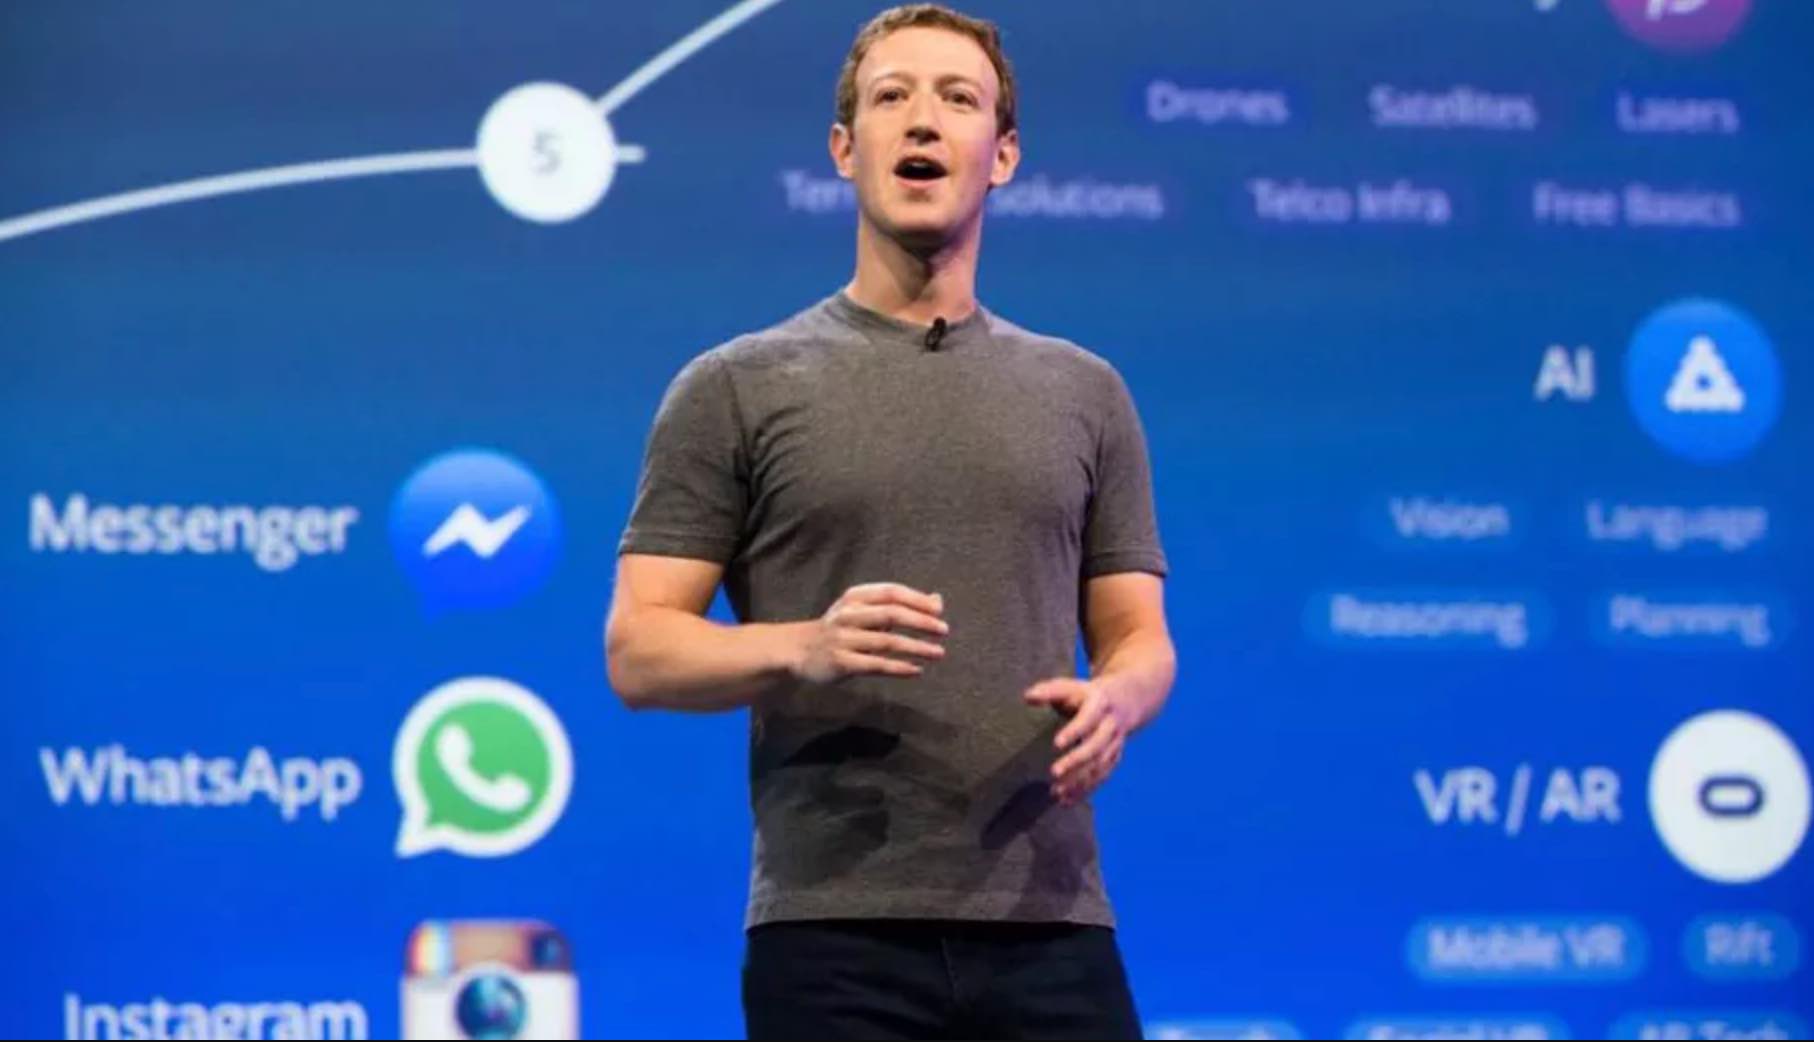 Facebook se chamará 'Meta', com foco no metaverso - Sagres Online